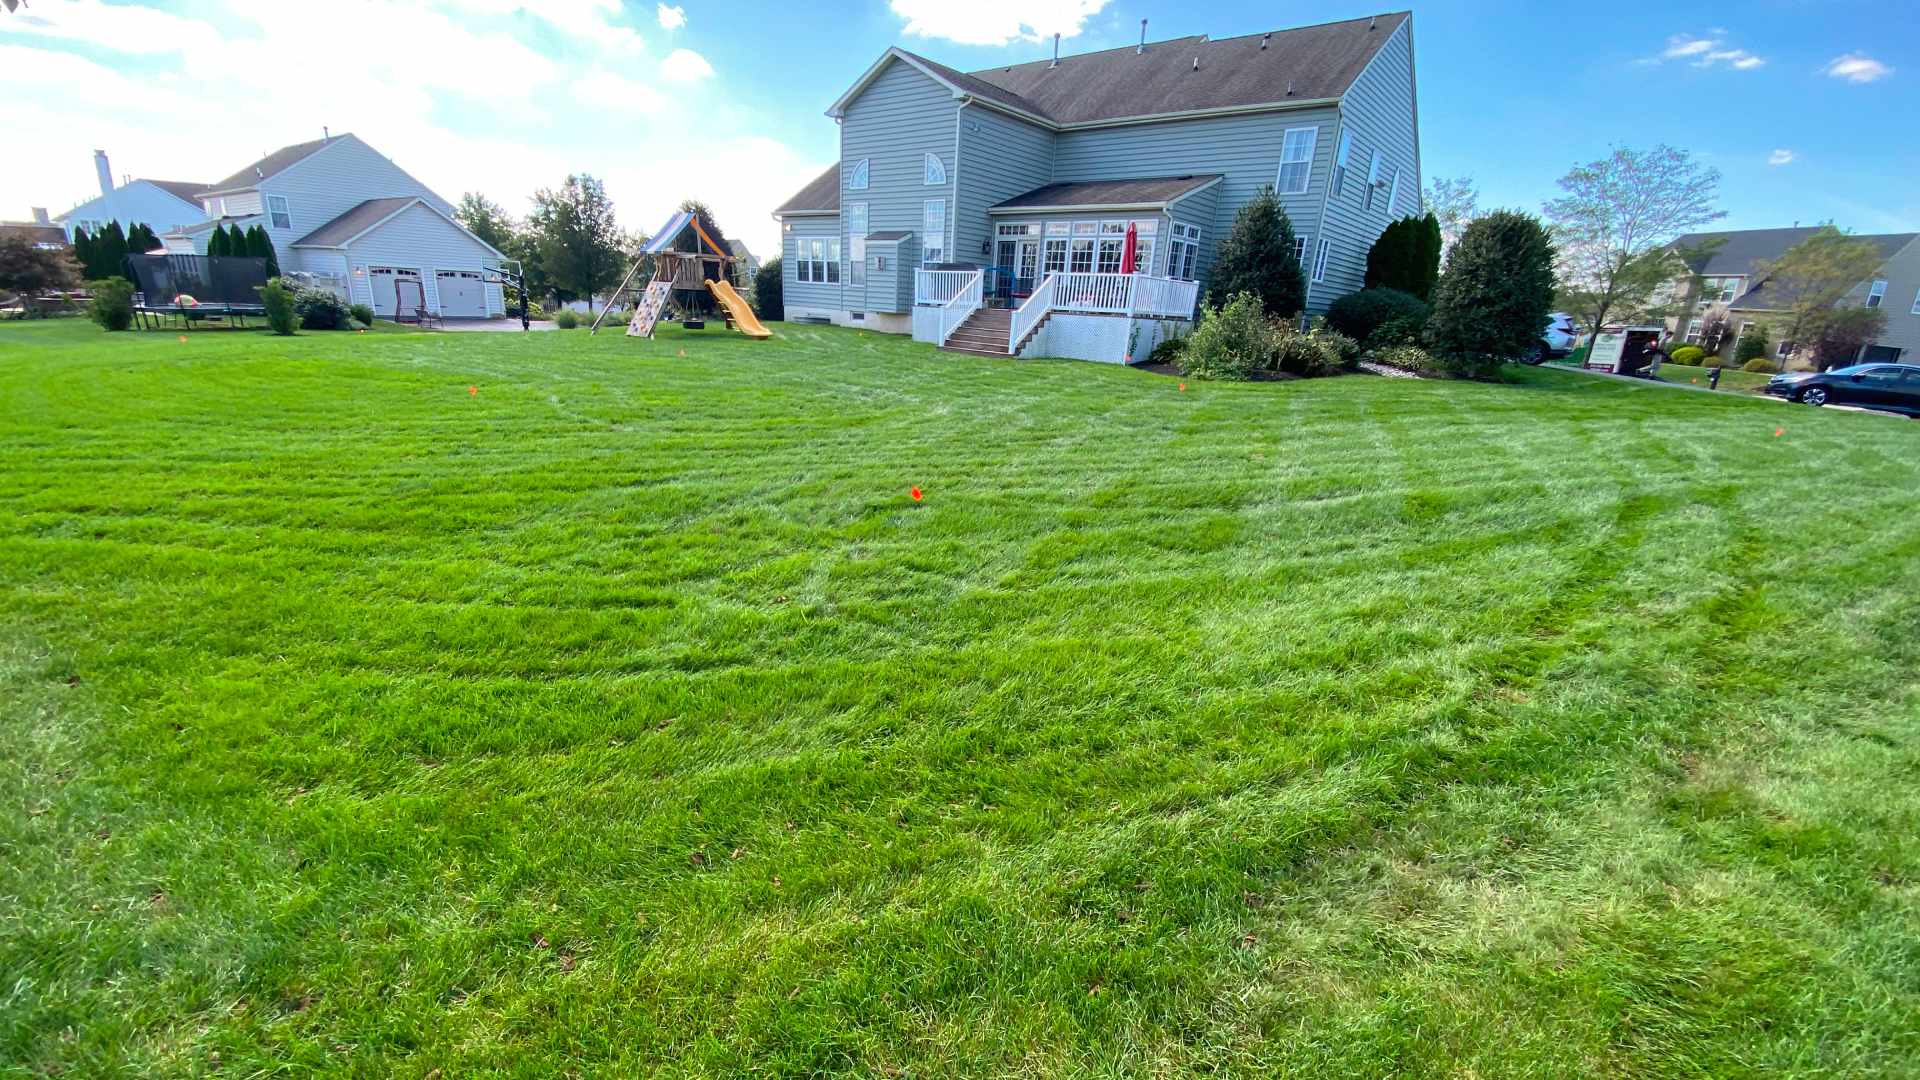 Freshly mowed backyard lawn in Doylestown, PA.